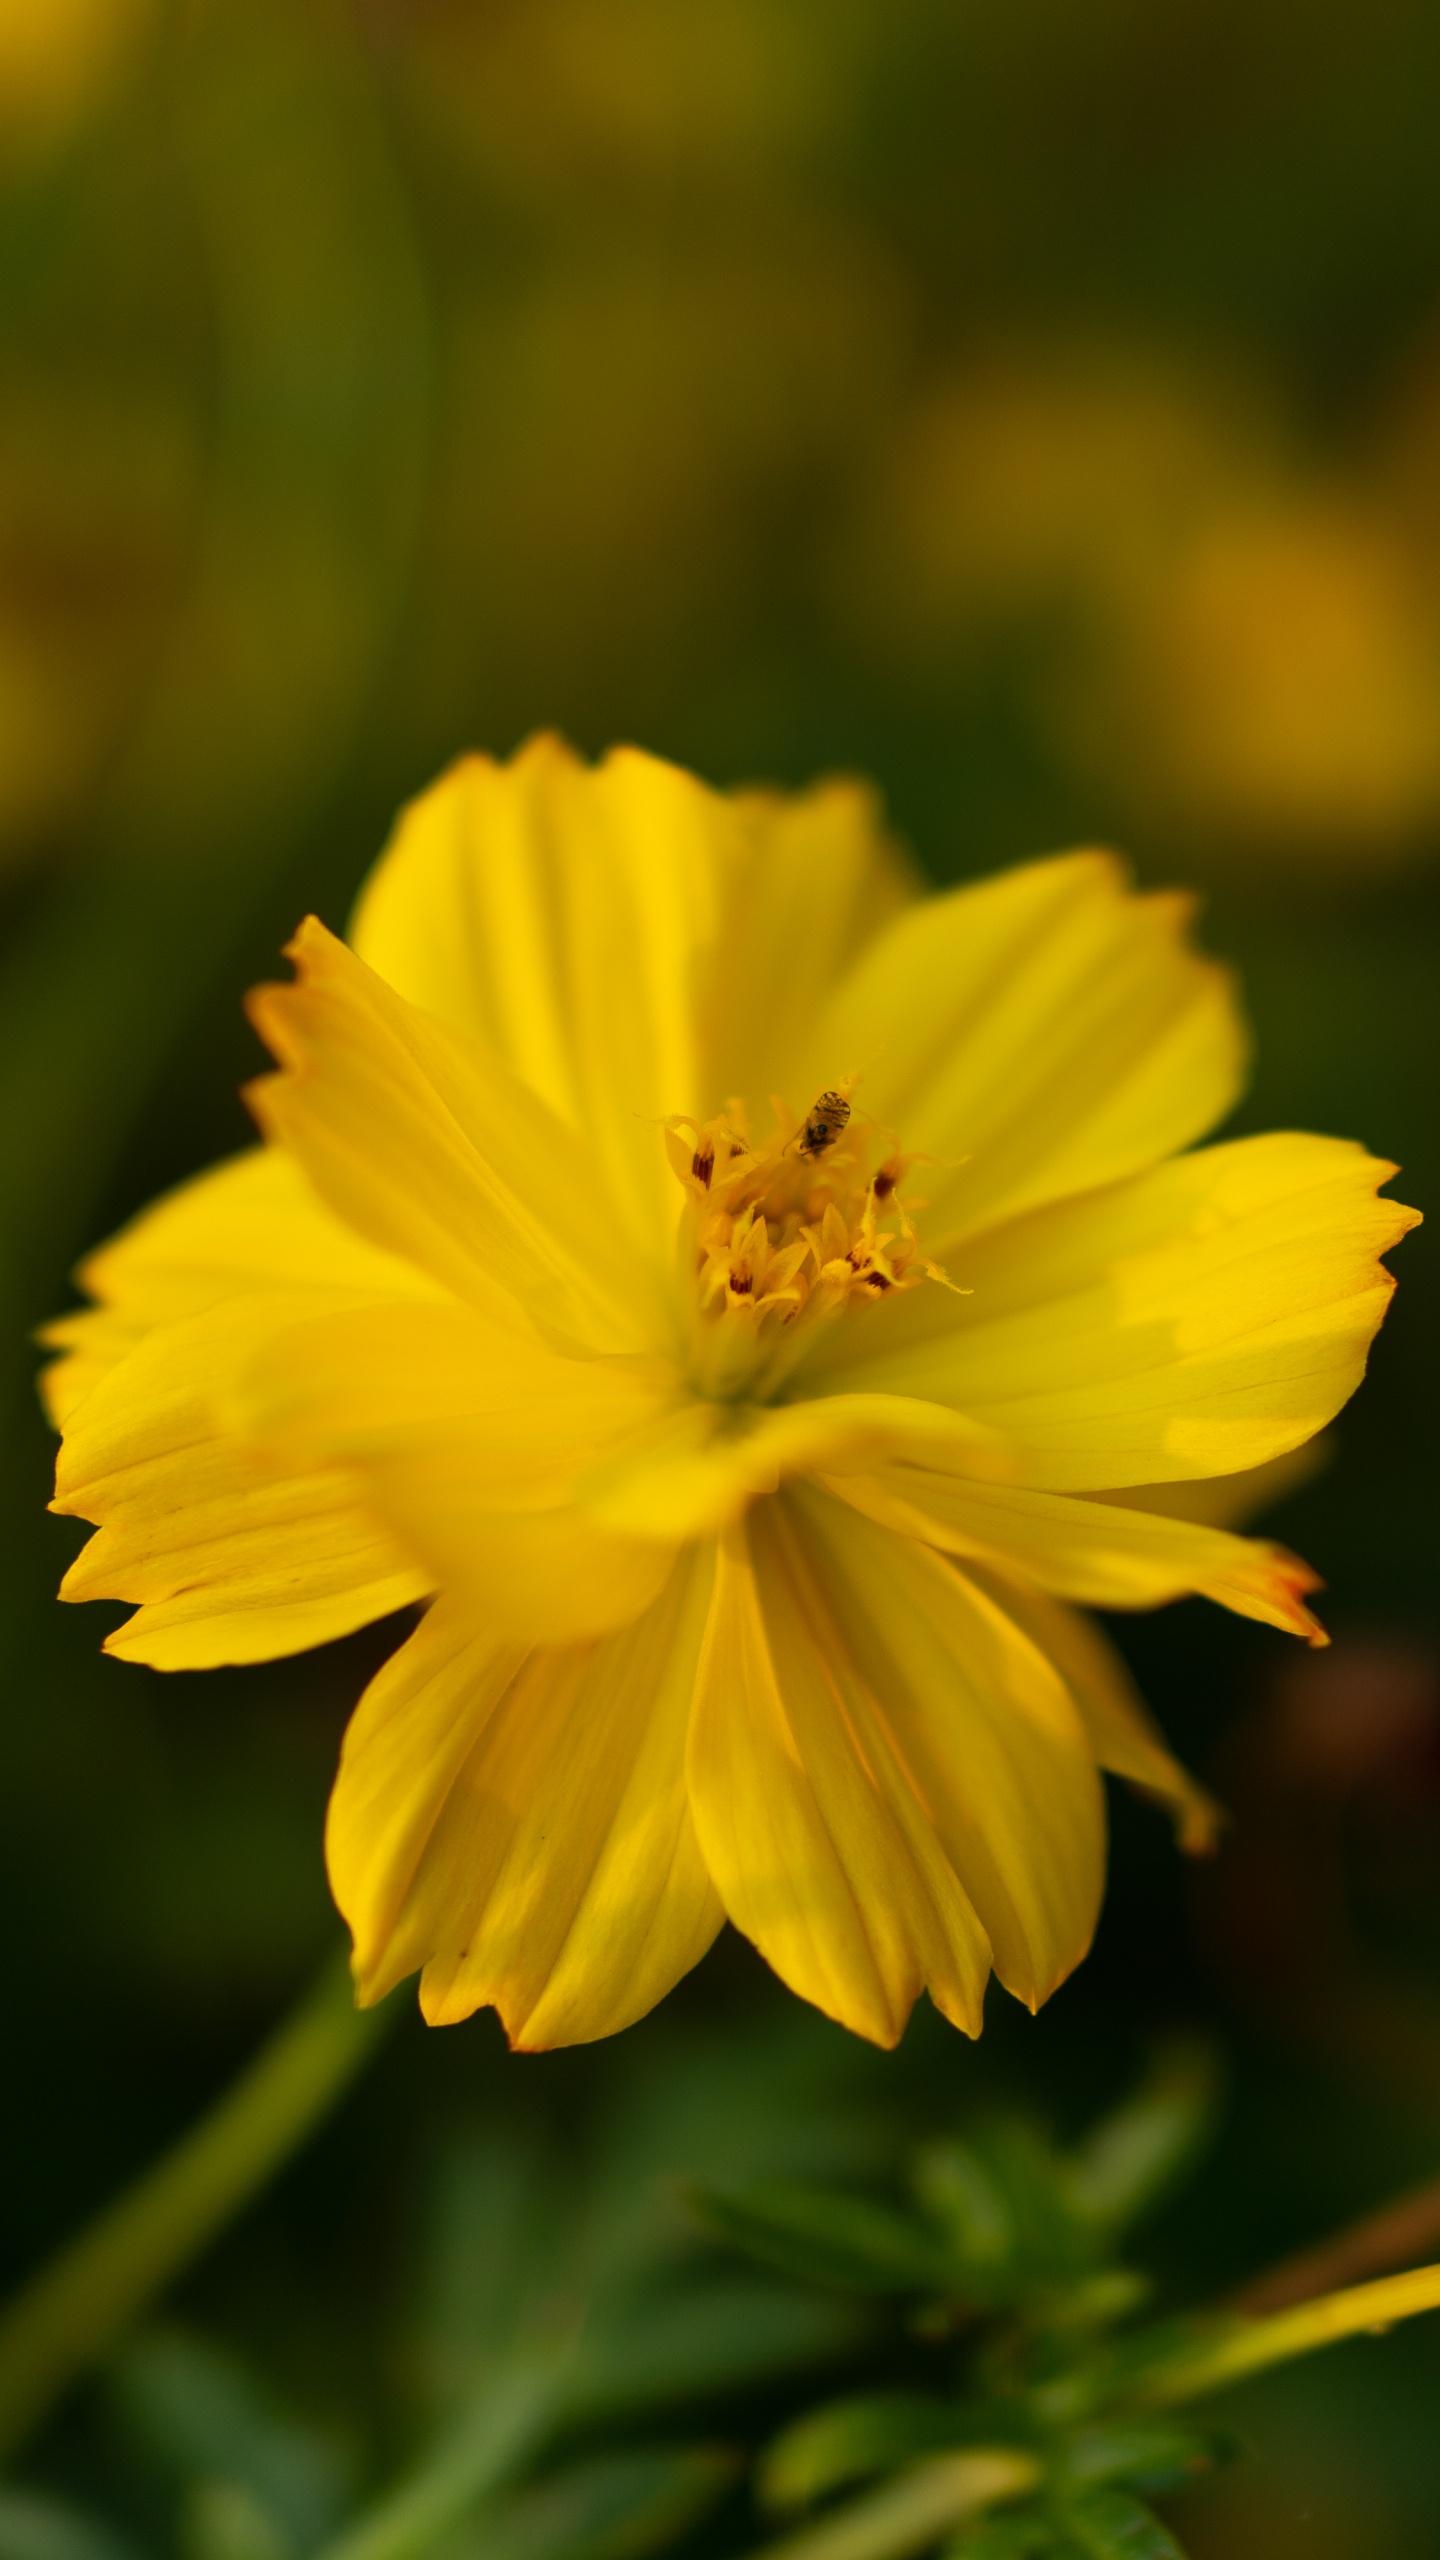 Yellow Flower in Tilt Shift Lens. Wallpaper in 1440x2560 Resolution